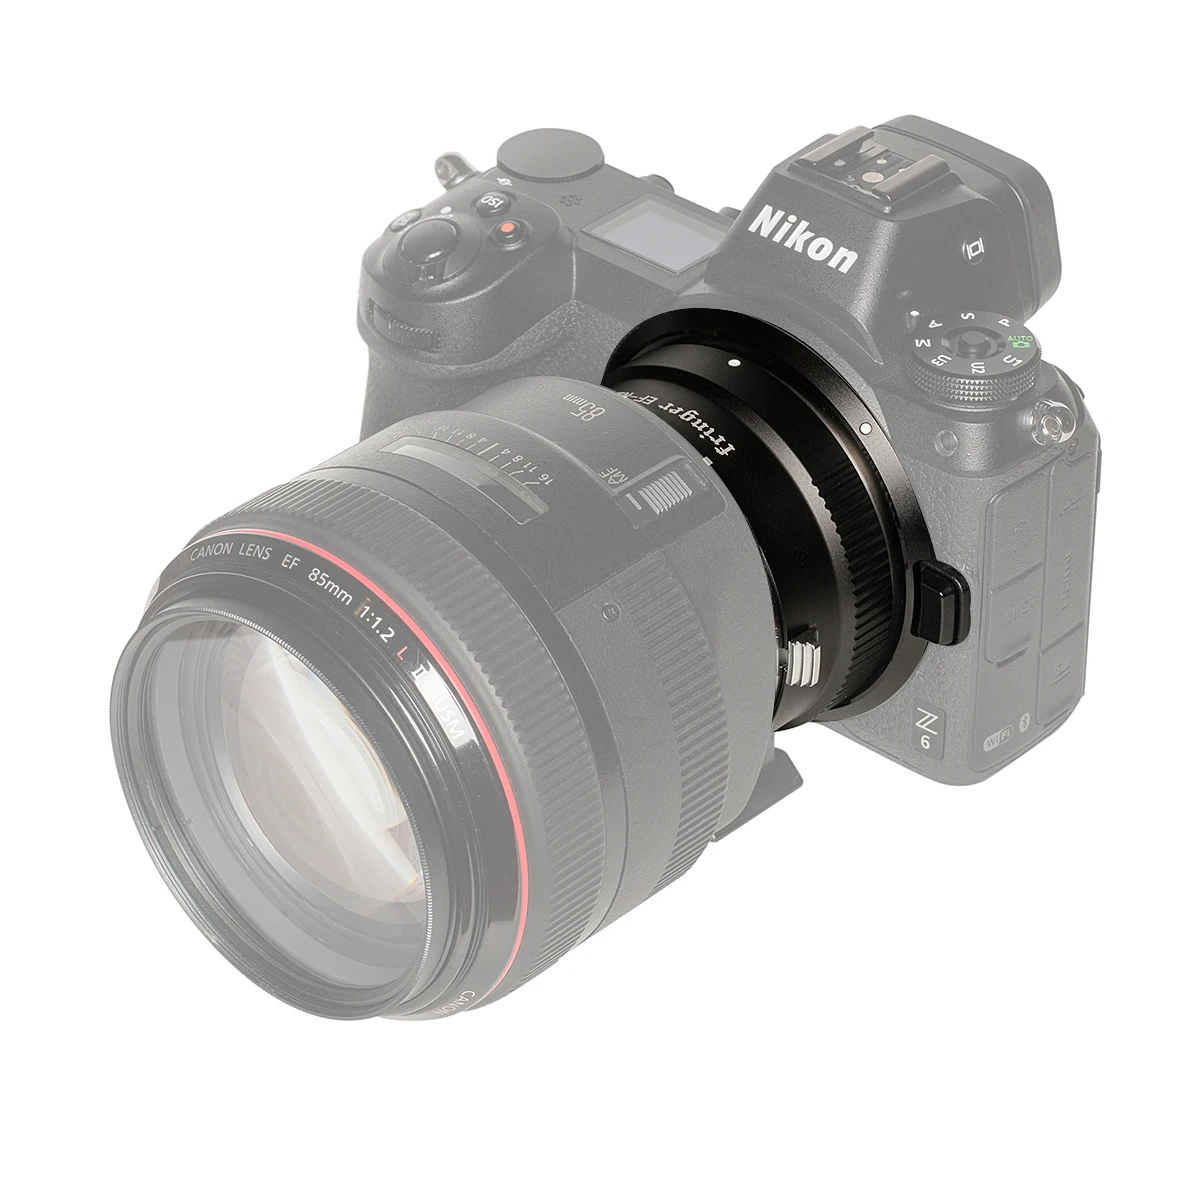 Fringer EF-NZ עדשת מצלמה מתאם טבעת על Canon EF EF-S עדשות לניקון Z המצלמה z6 Z7 Z50 z5 מתאם הר . ' - ' . 4